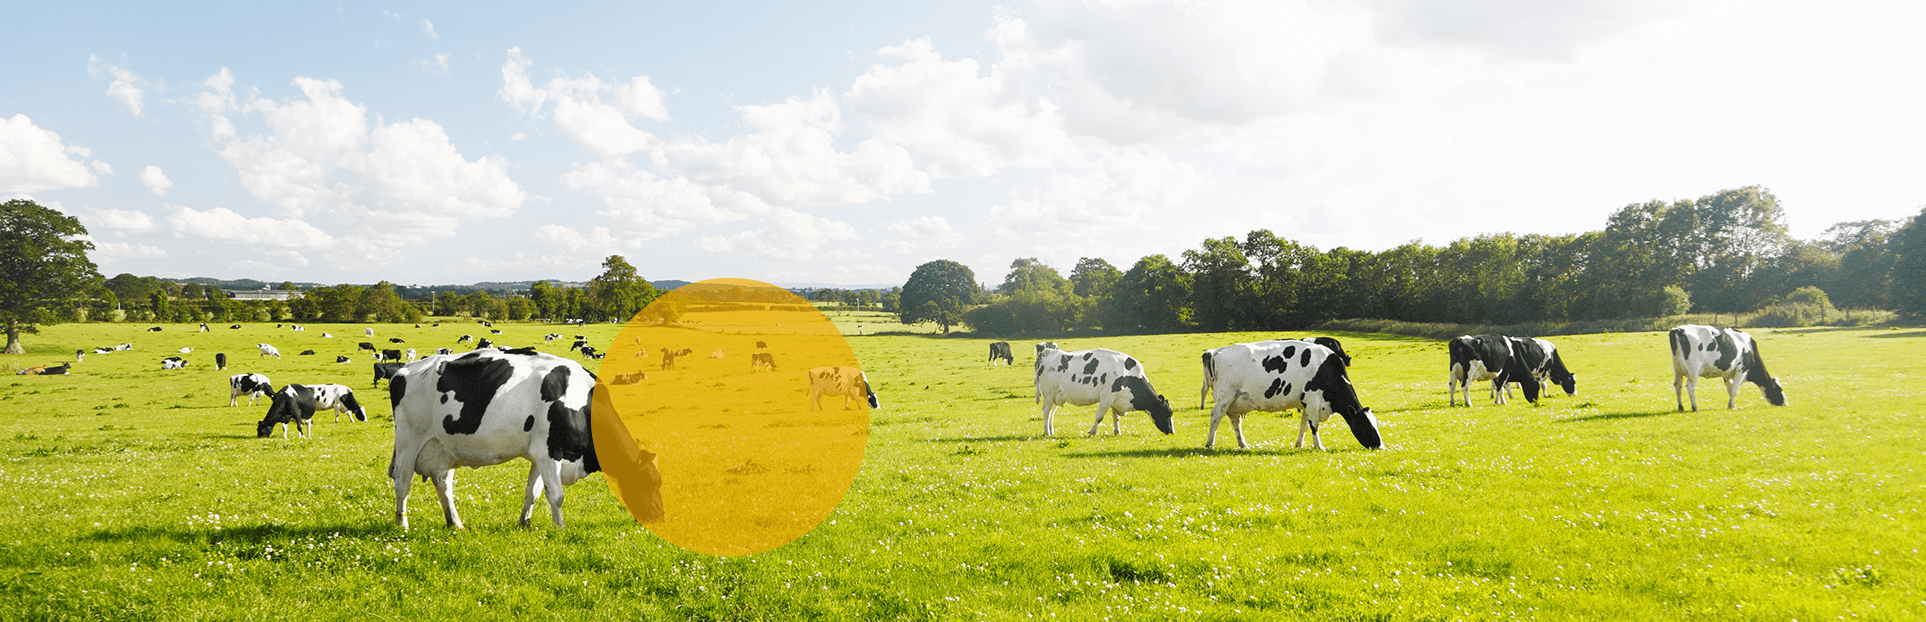 cows grazing in green fields